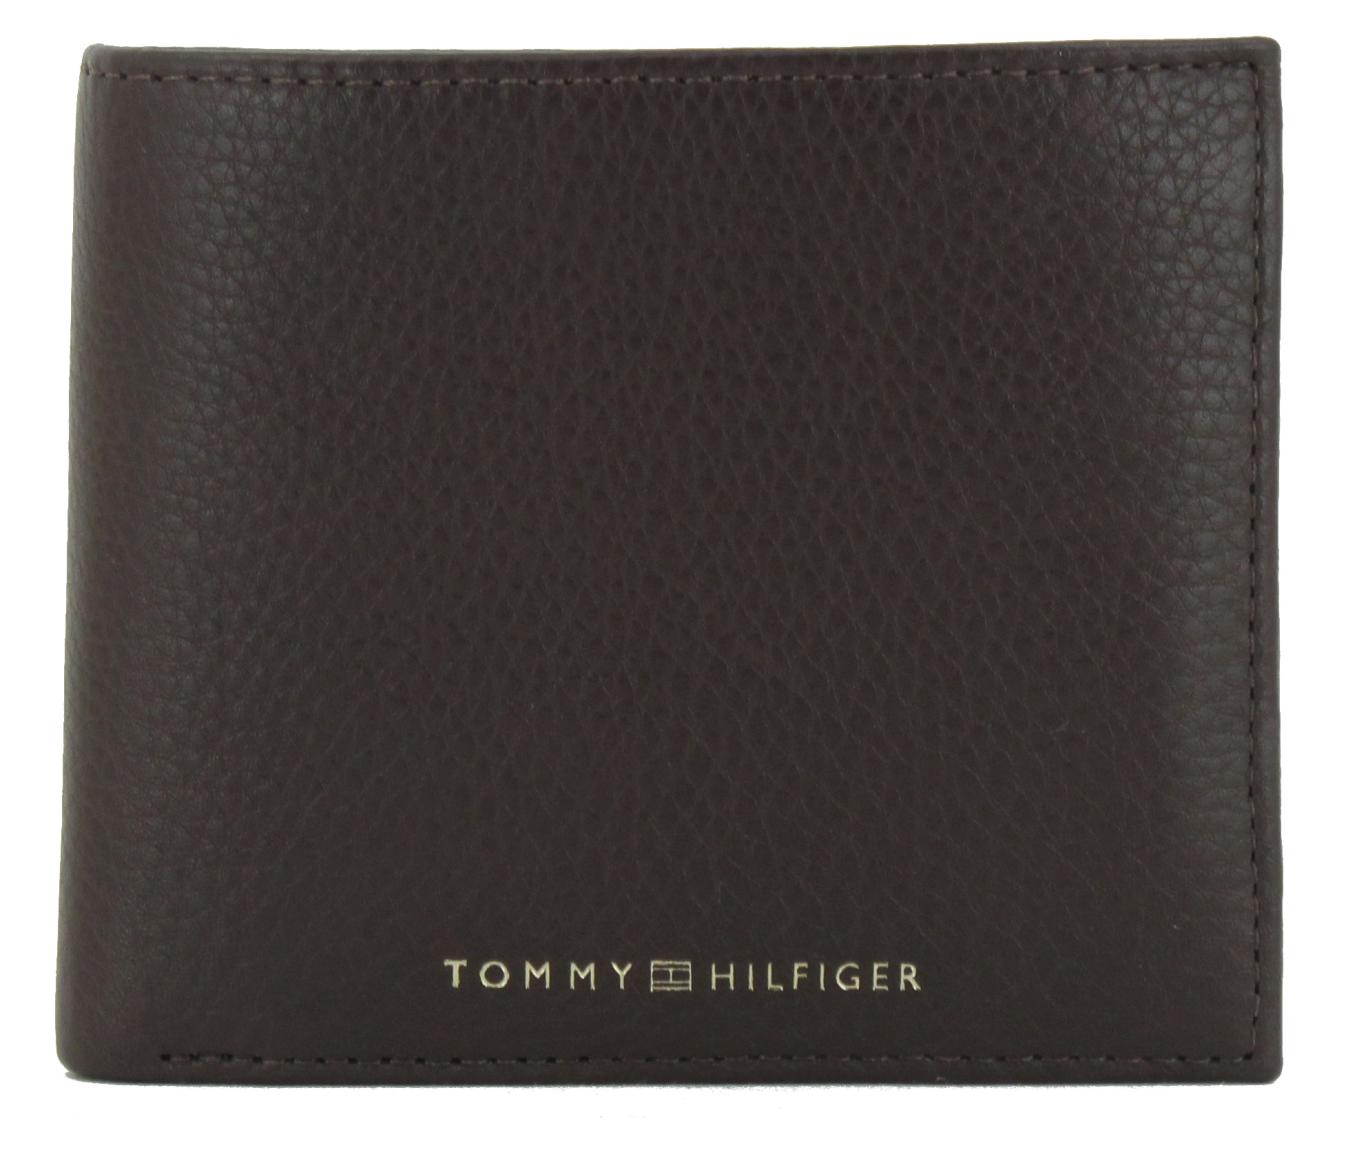 Ledergeldbeutel Tommy Hilfiger Premium CC and Coin Cognac braun 